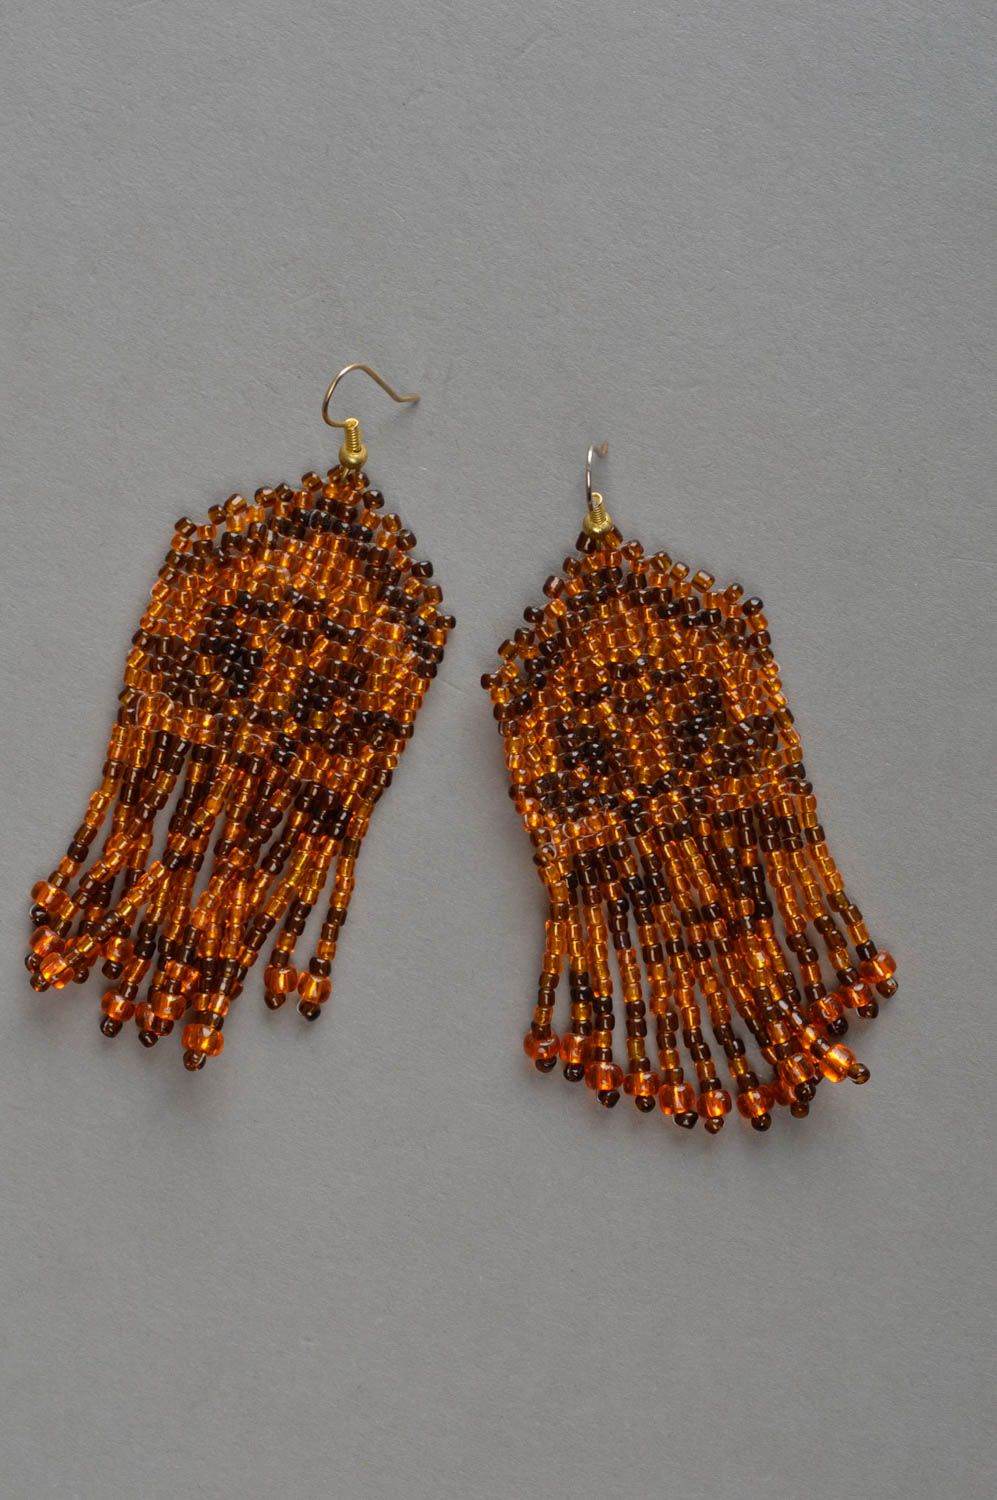 Seed bead earrings handcrafted jewelry tassel earrings best gift for women photo 2